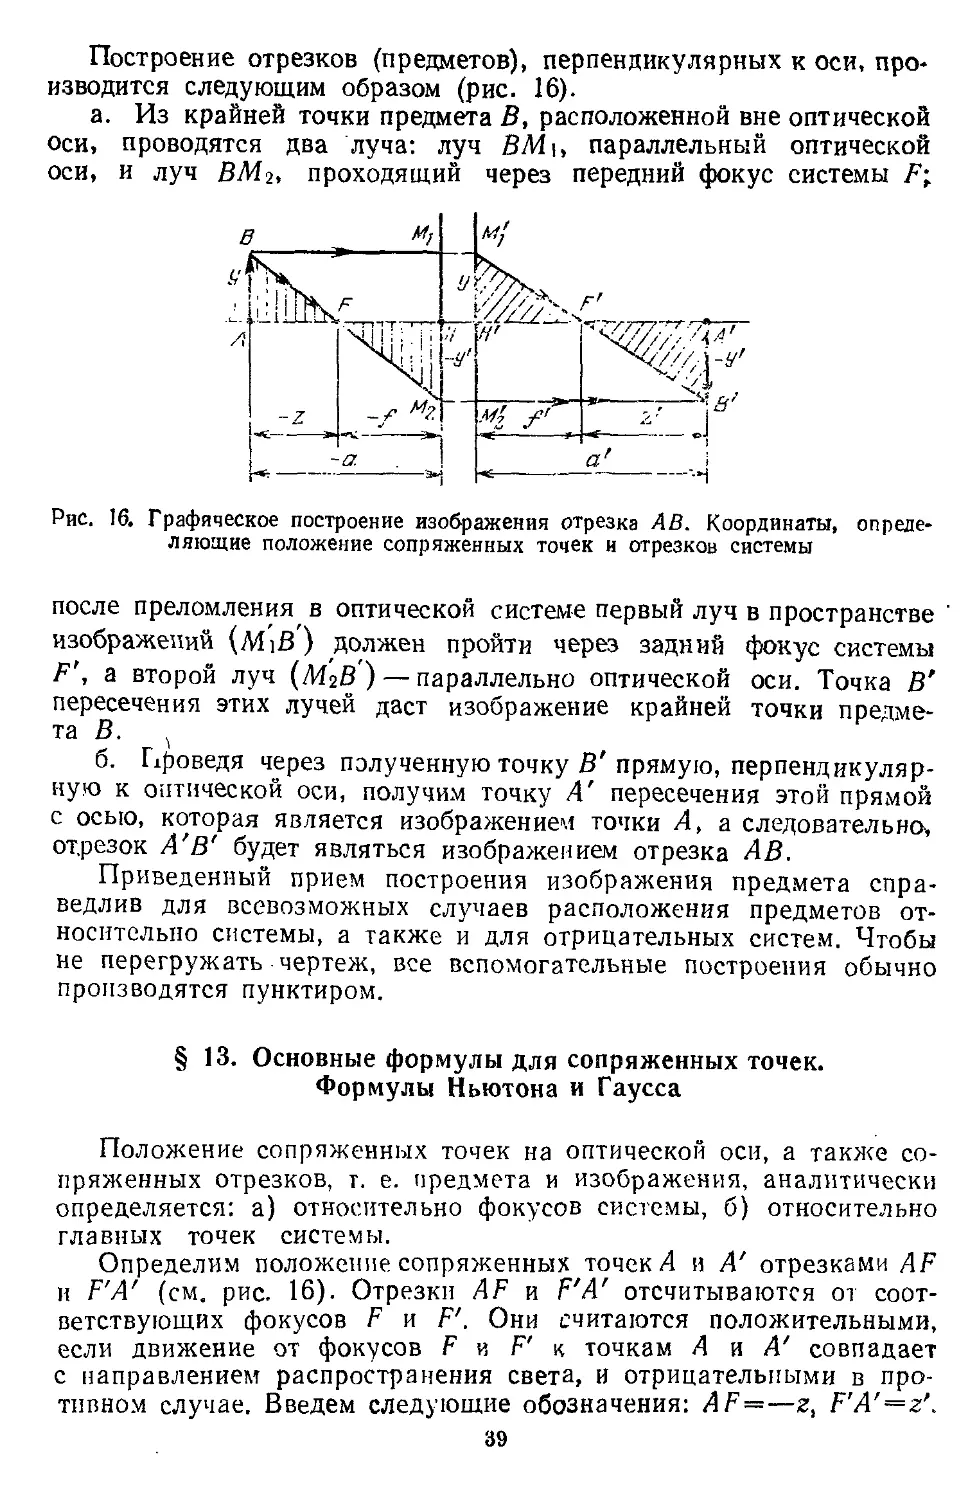 § 13. Основные формулы для сопряженных точек. Формулы Ньютона и Гаусса